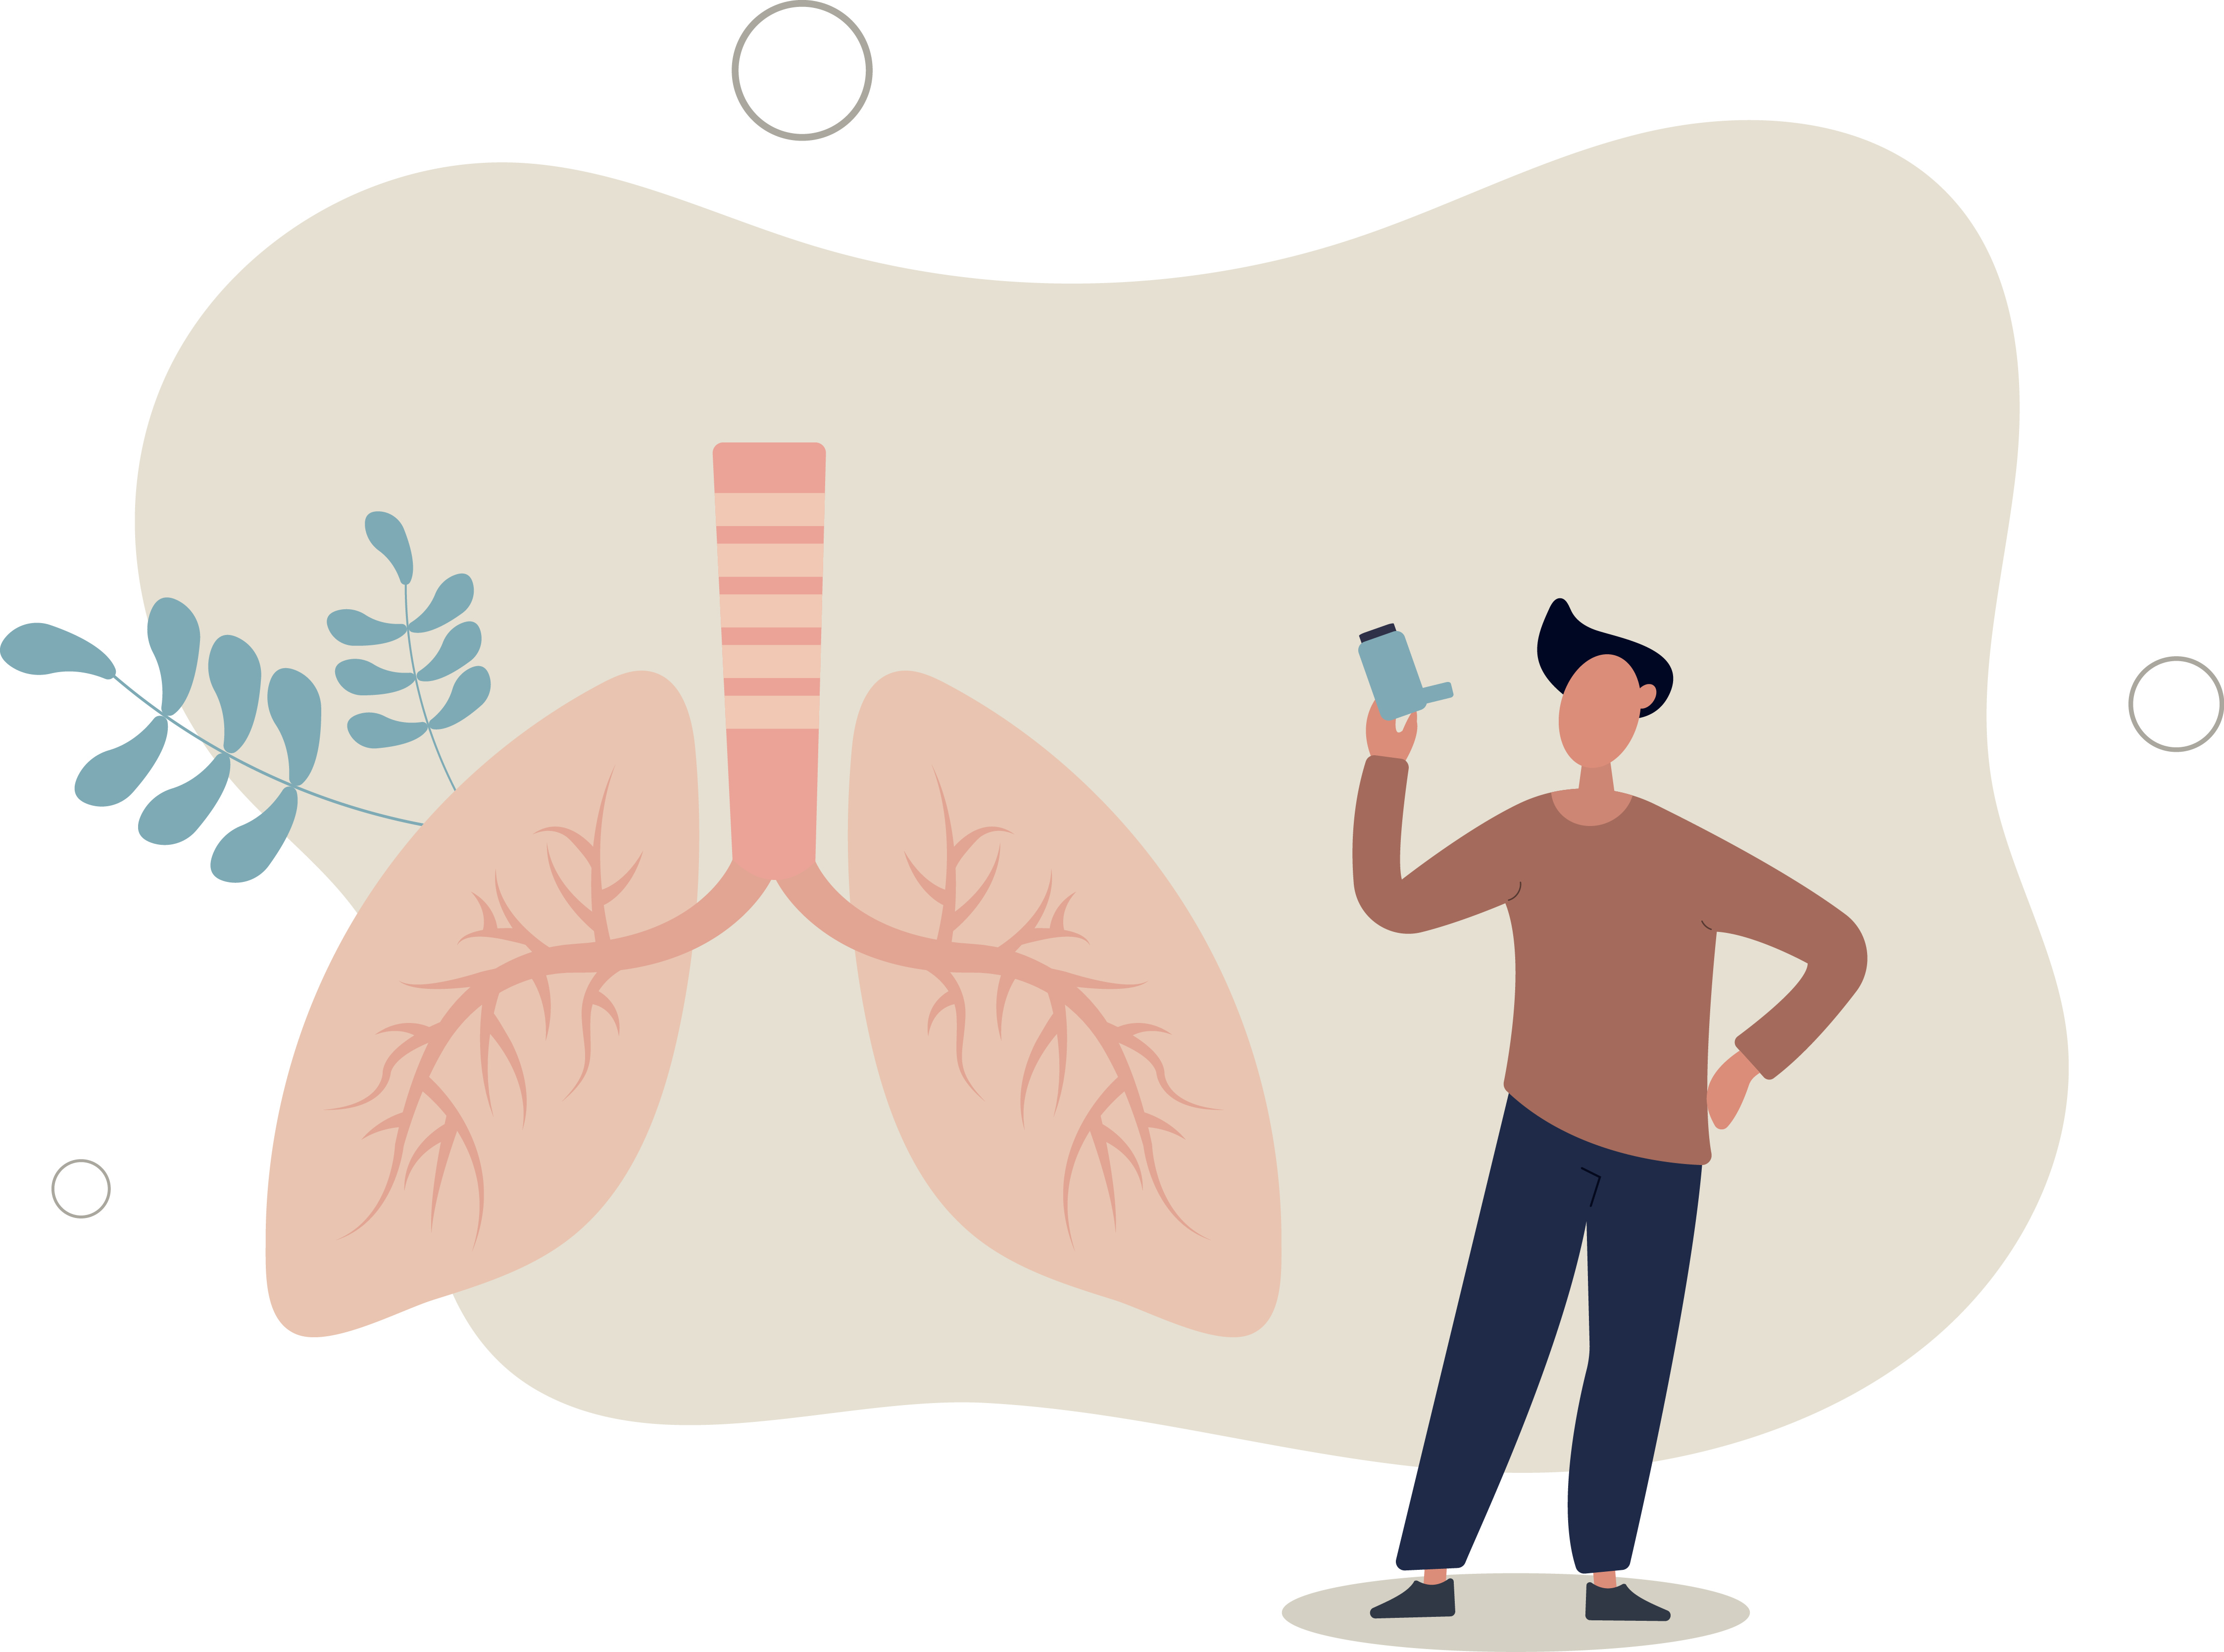 Cinq fonctions du système respiratoire